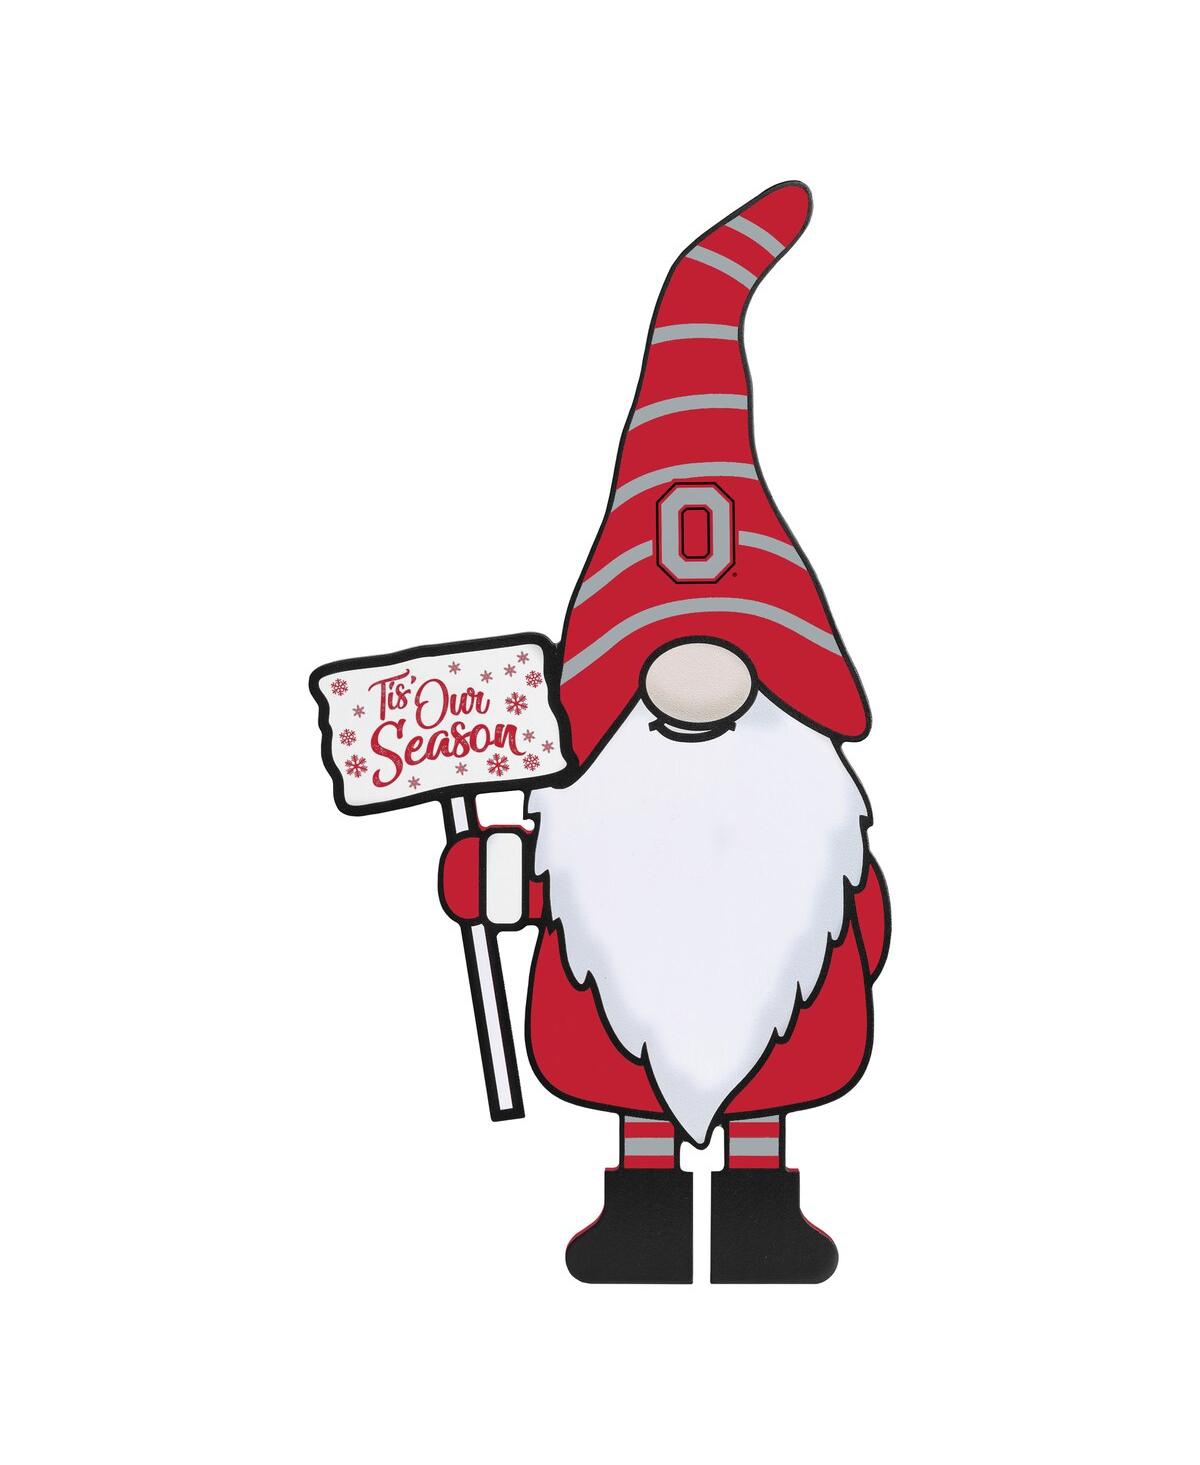 Foco Ohio State Buckeyes  16" Tis Our Season Gnome In Red,white